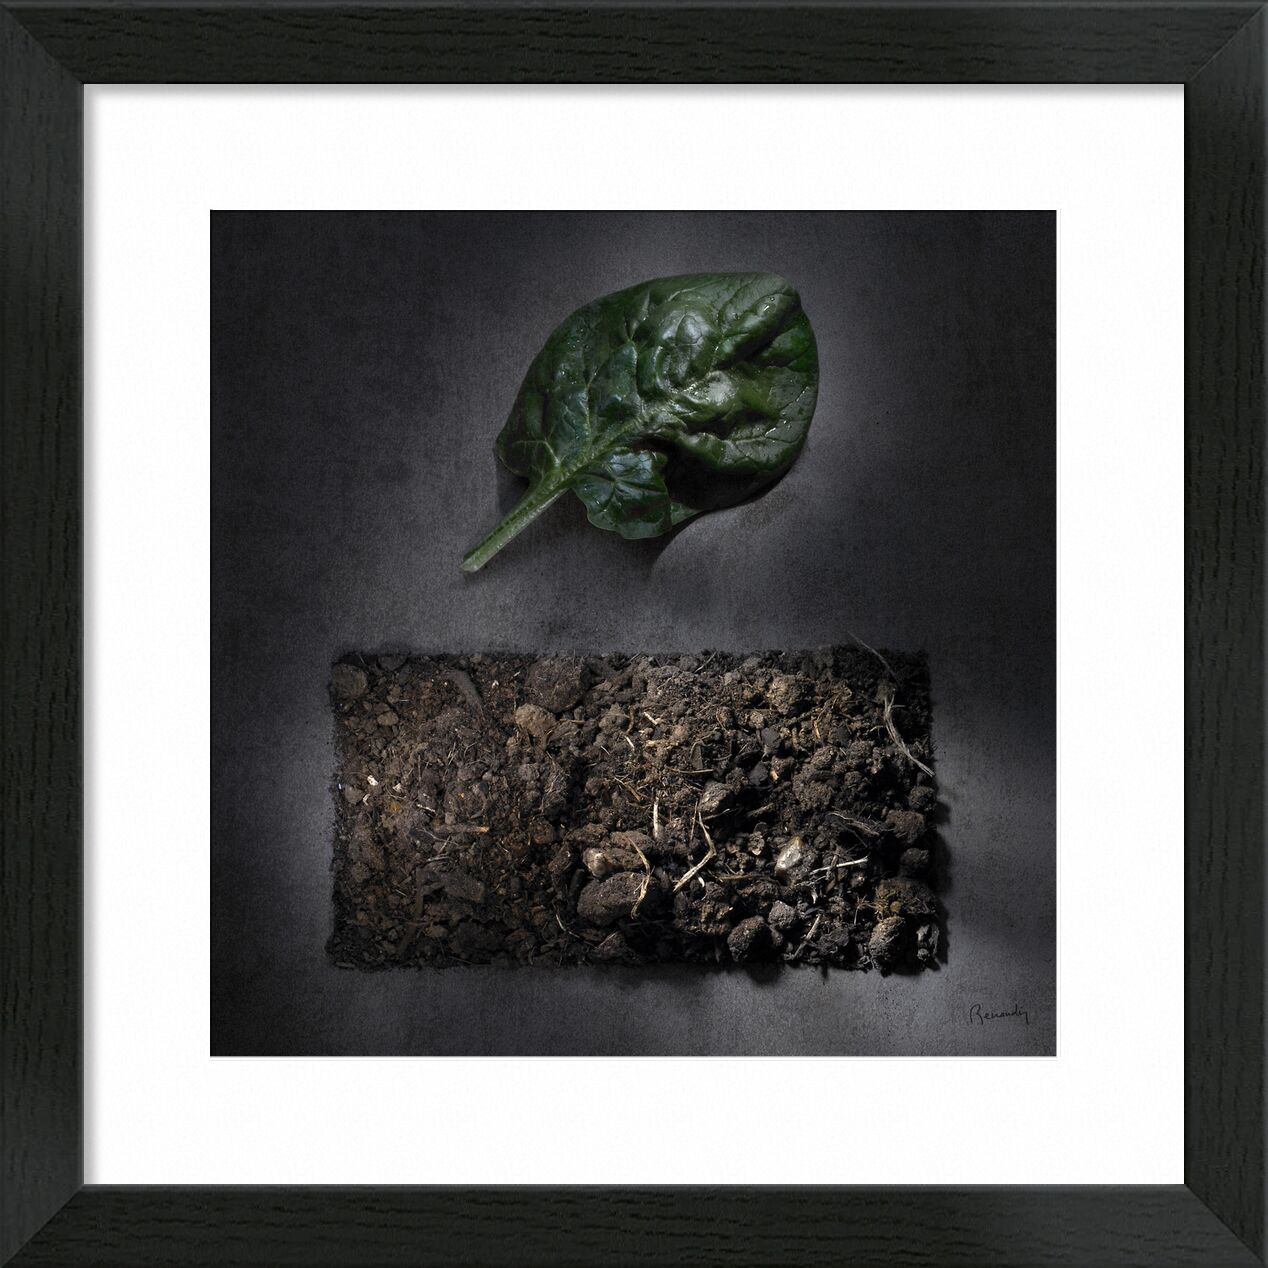 Objectif TERRE !  #5 de jean michel RENAUDIN, Prodi Art, des légumes, soleil, terre végétale, compost, fruits, transformation, humus, terres, En traitement, terres arables